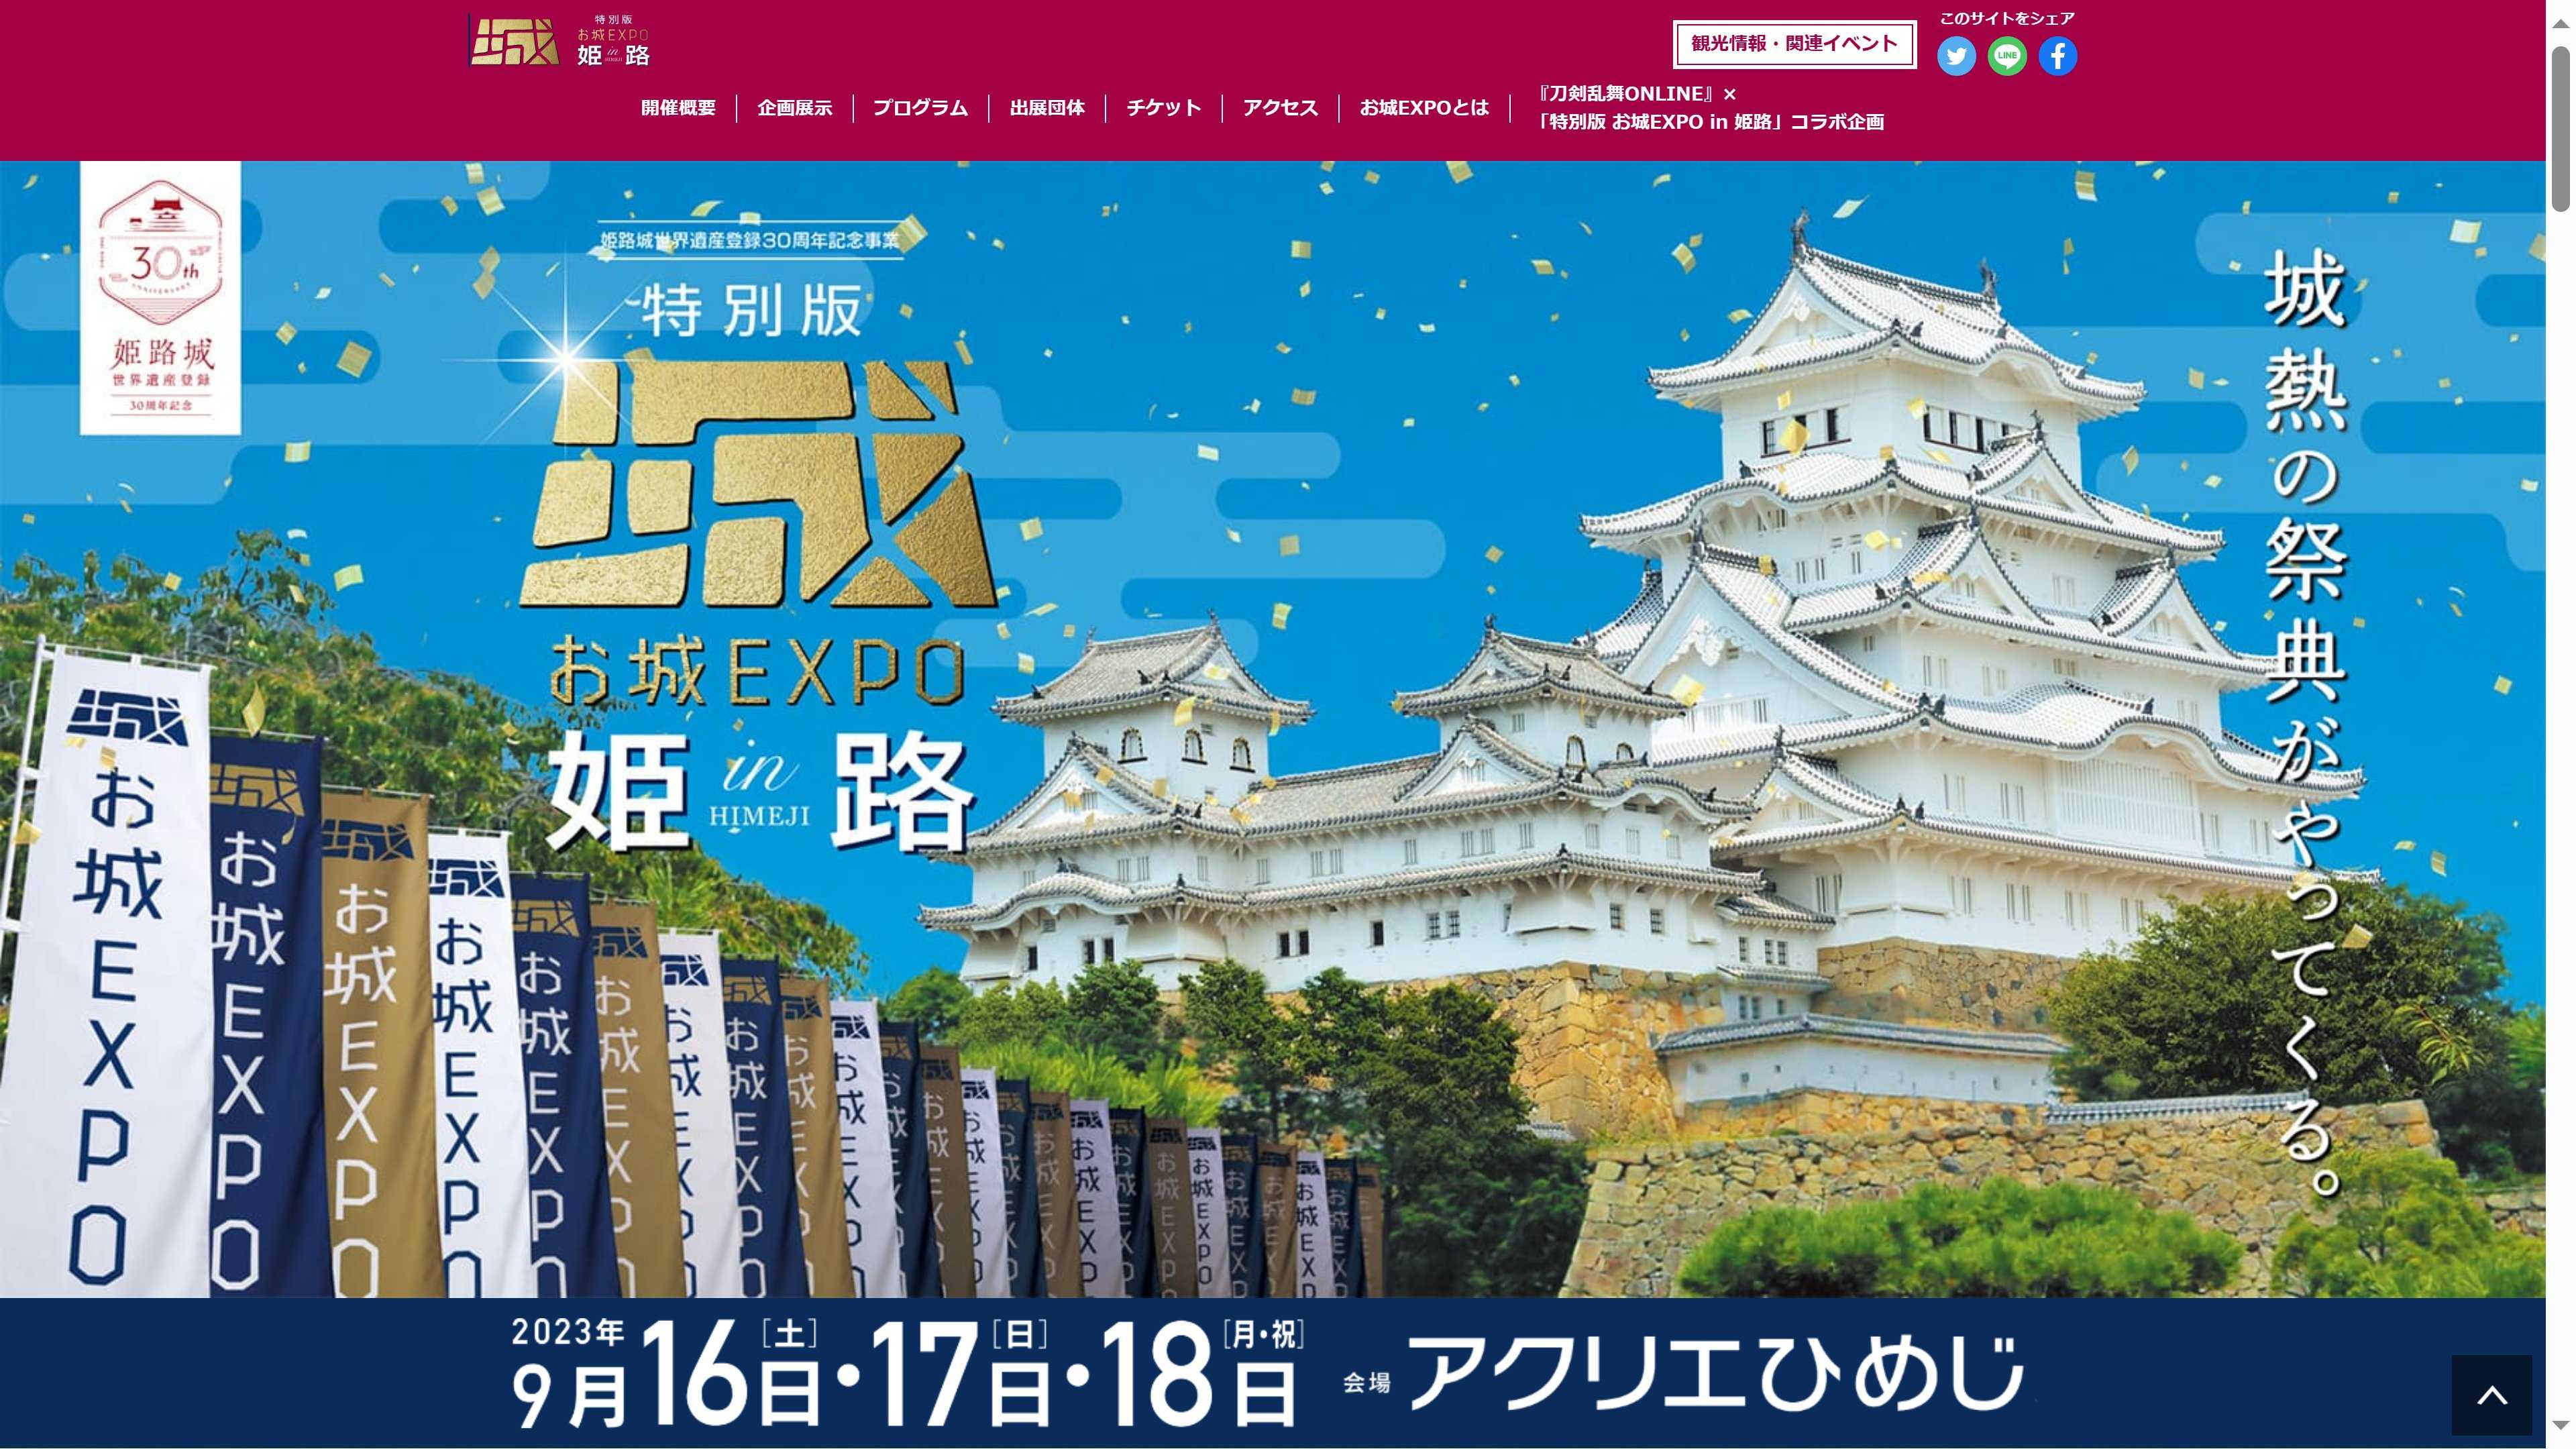 特別版 お城EXPO in 姫路へ行って来ました | Canon Boy のブログ